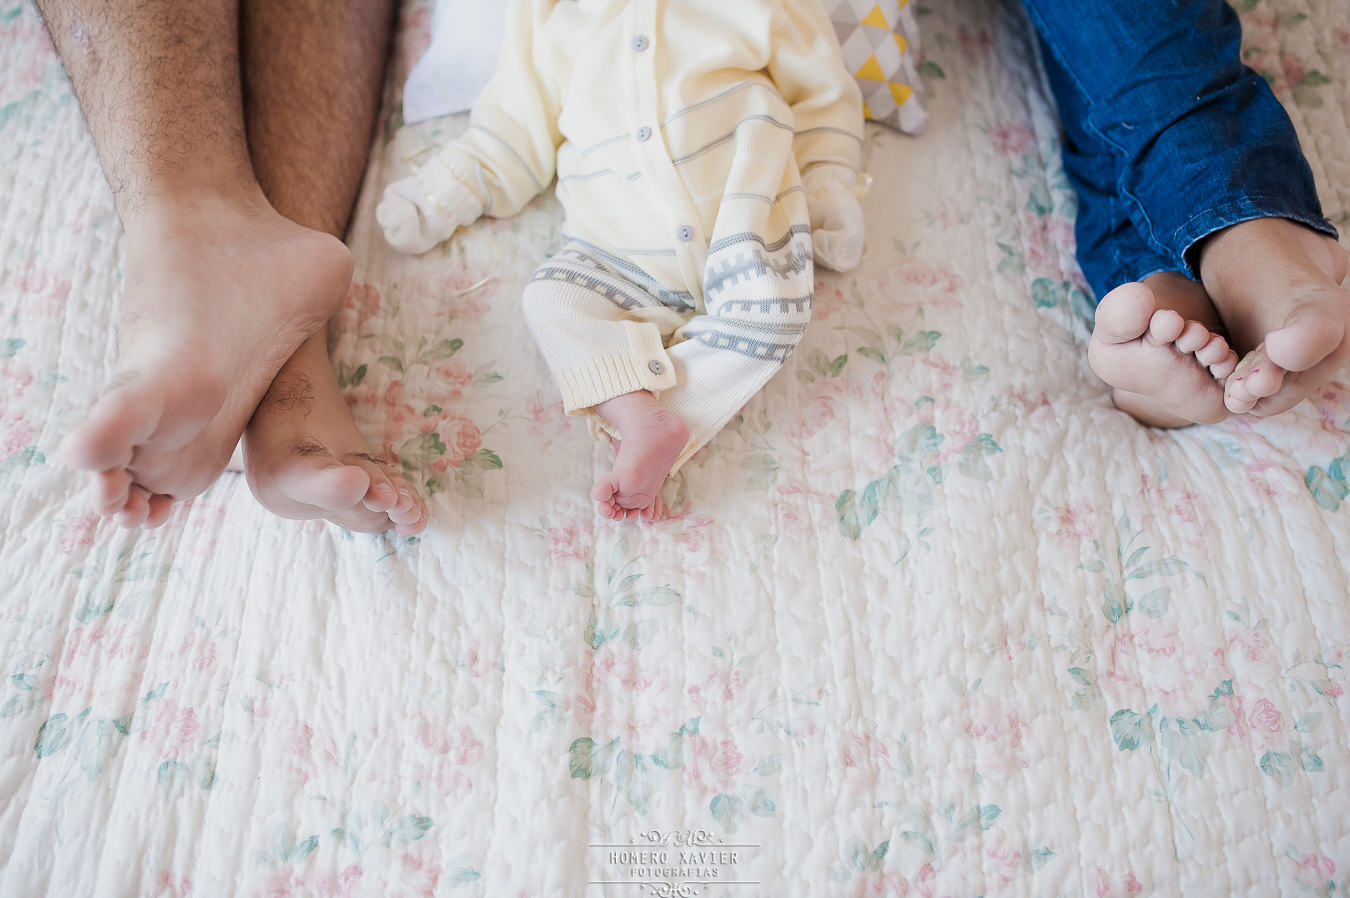 Ensaio fotográfico Newborn realizado na casa do bebê recém nascido em BH